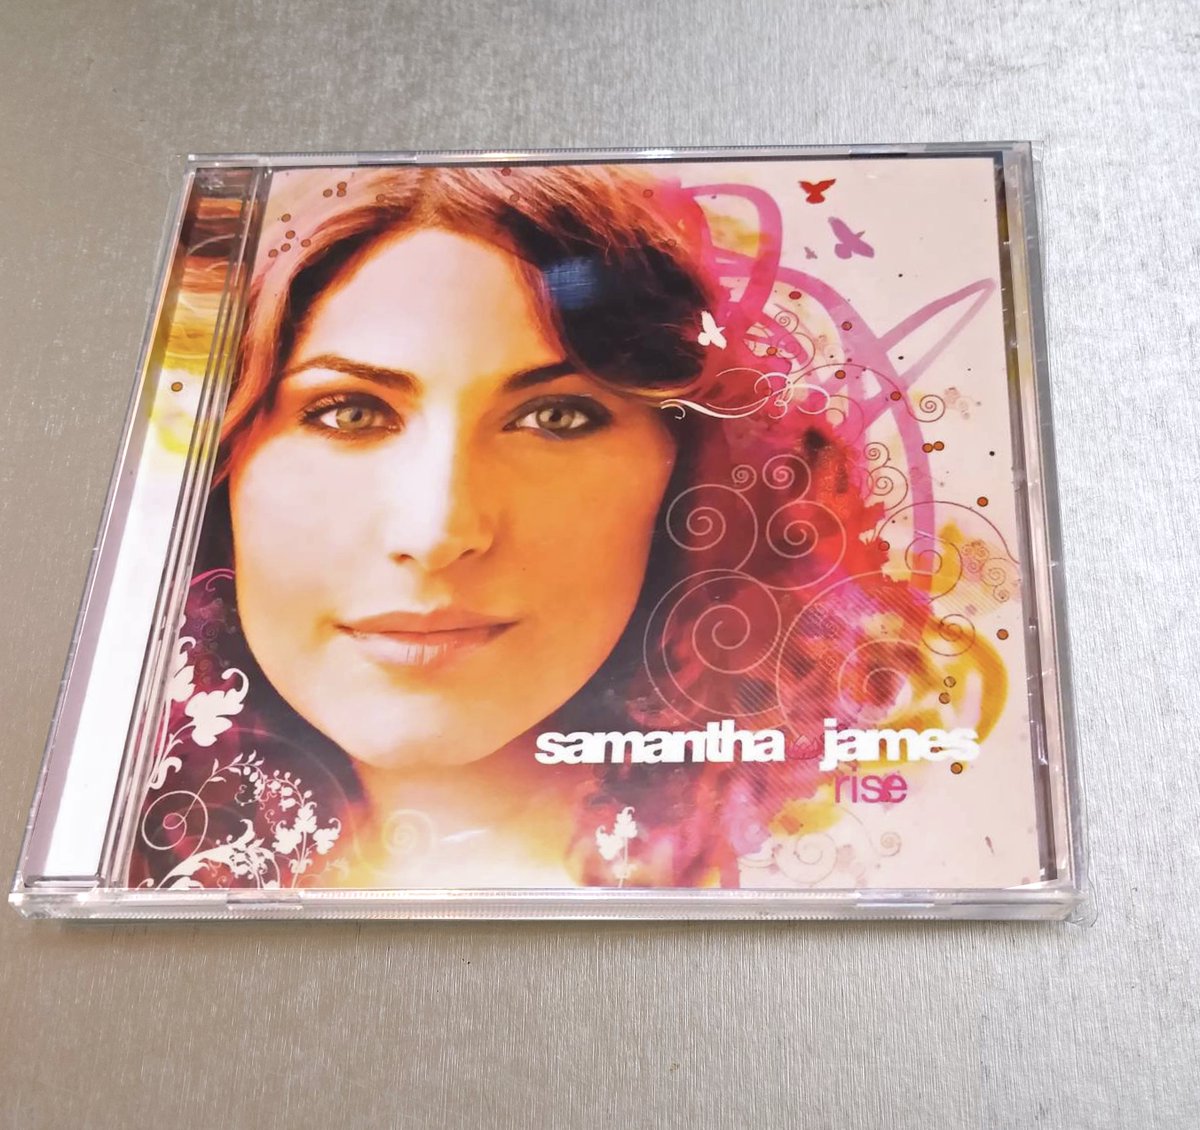 サマンサ・ジェイムス
『ライズ』💿ＣＤ
2007 Japan
OM Records / KSR Corp.

Samantha James “Rise” 
🎵youtu.be/GC7wvaFYZmk

#SamanthaJames #OmRecords #deephouse #downtempo #dance #electronic #soul🌸🌴🎶